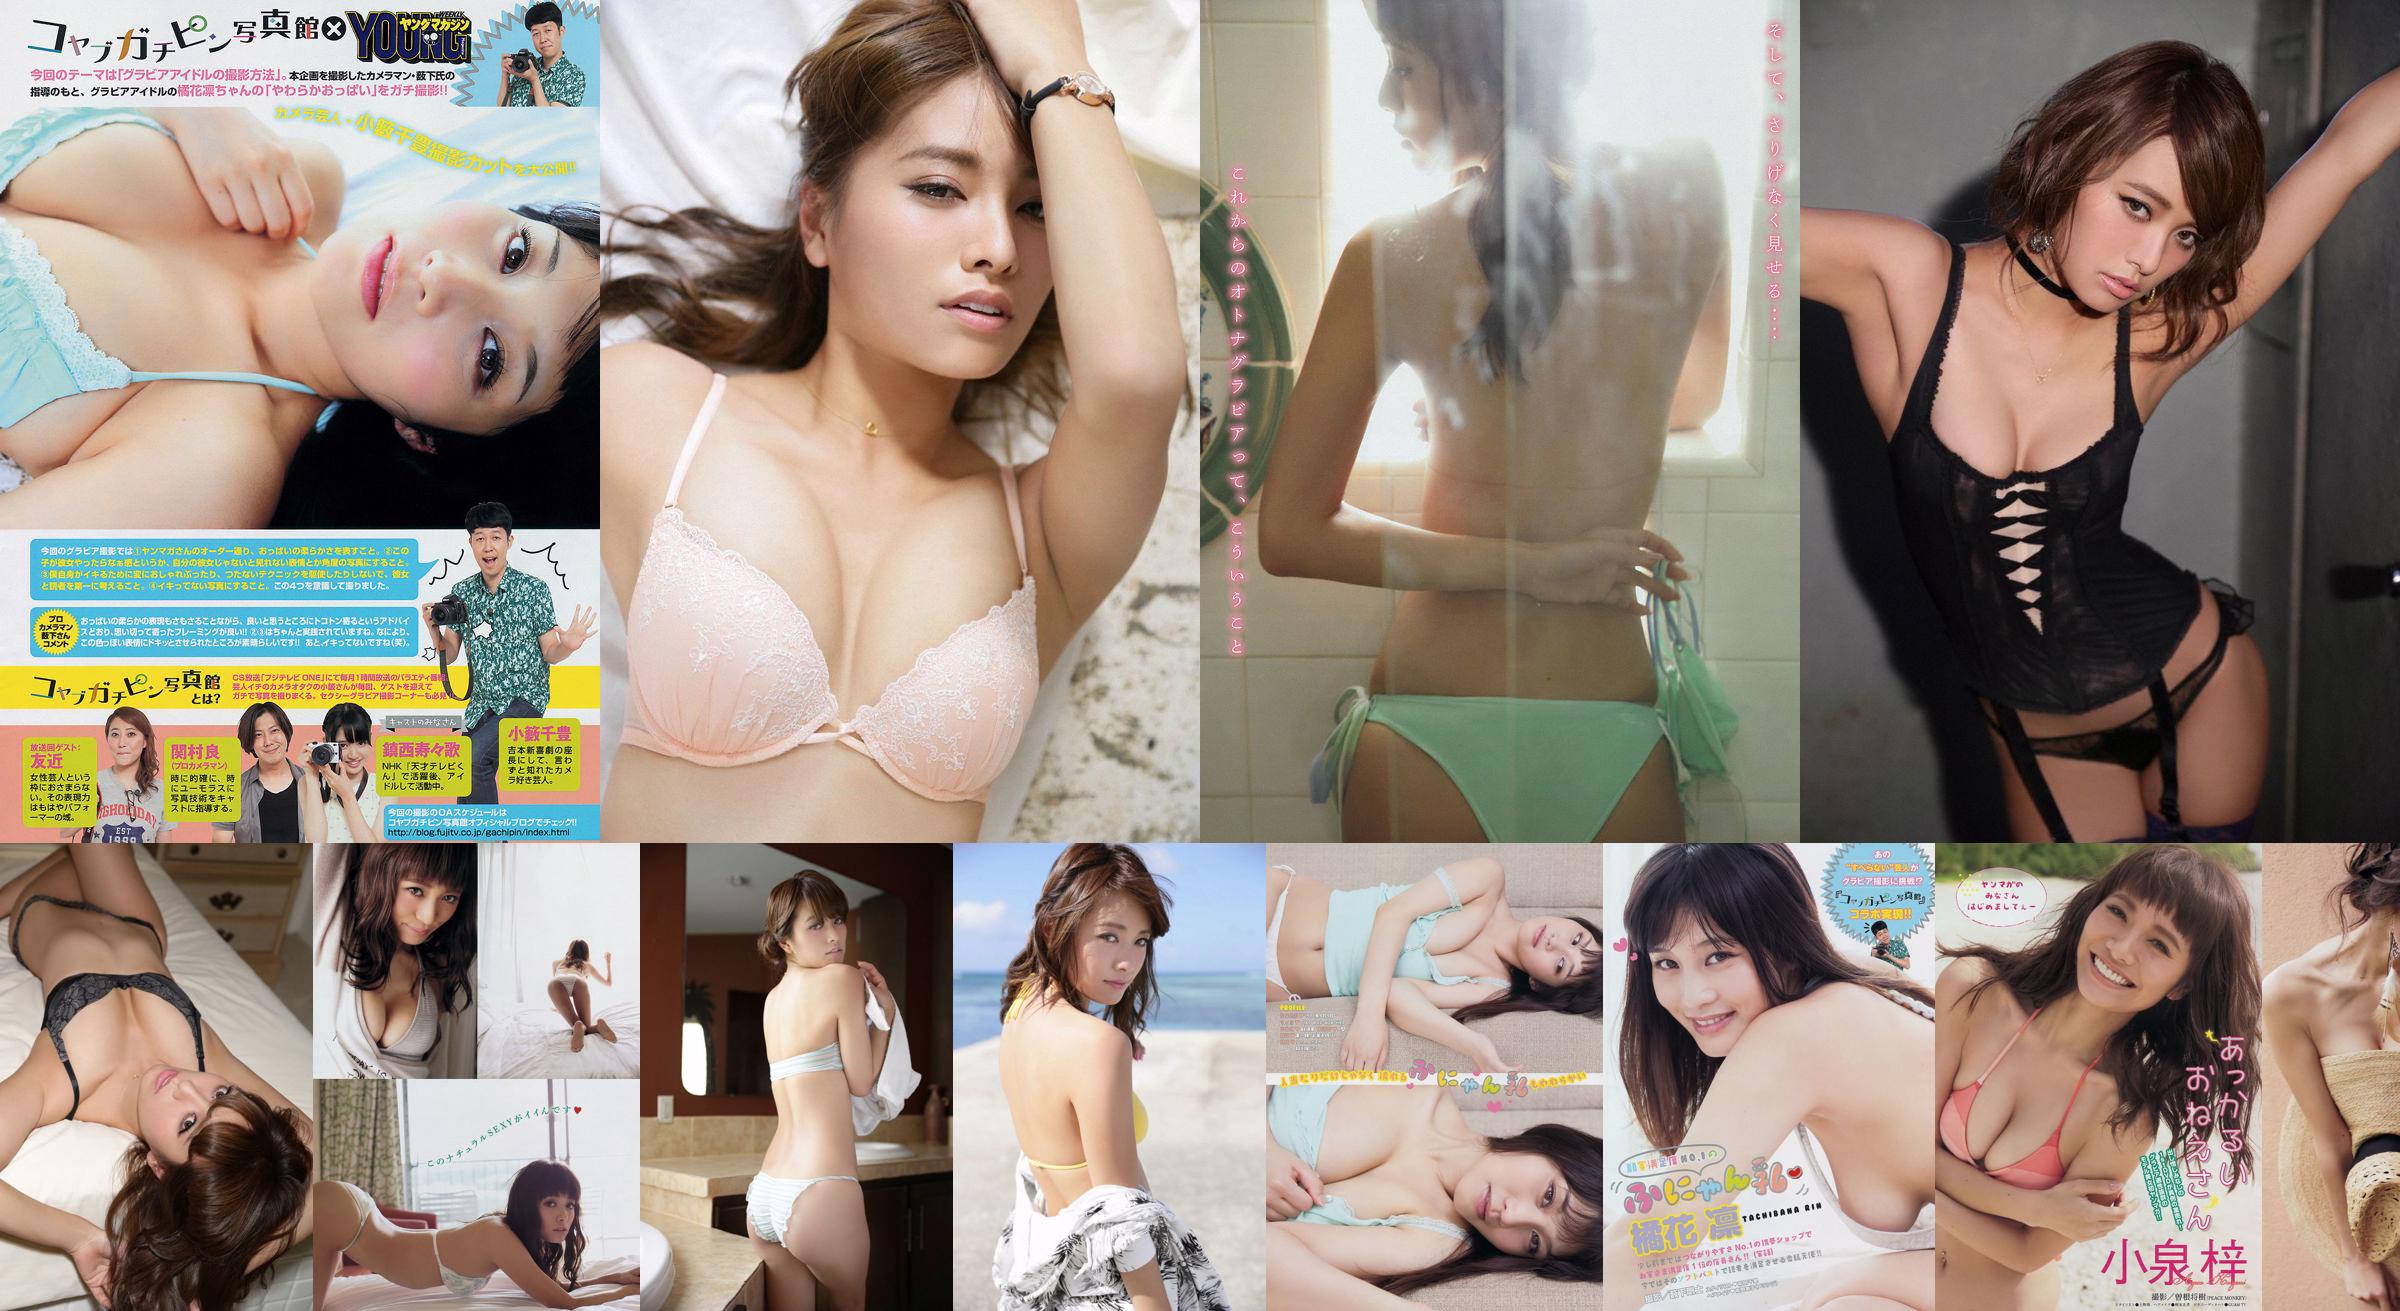 [Young Magazine] Azusa Koizumi Tachibana Rin 2014 No.43 Photo Magazine No.375907 Pagina 2